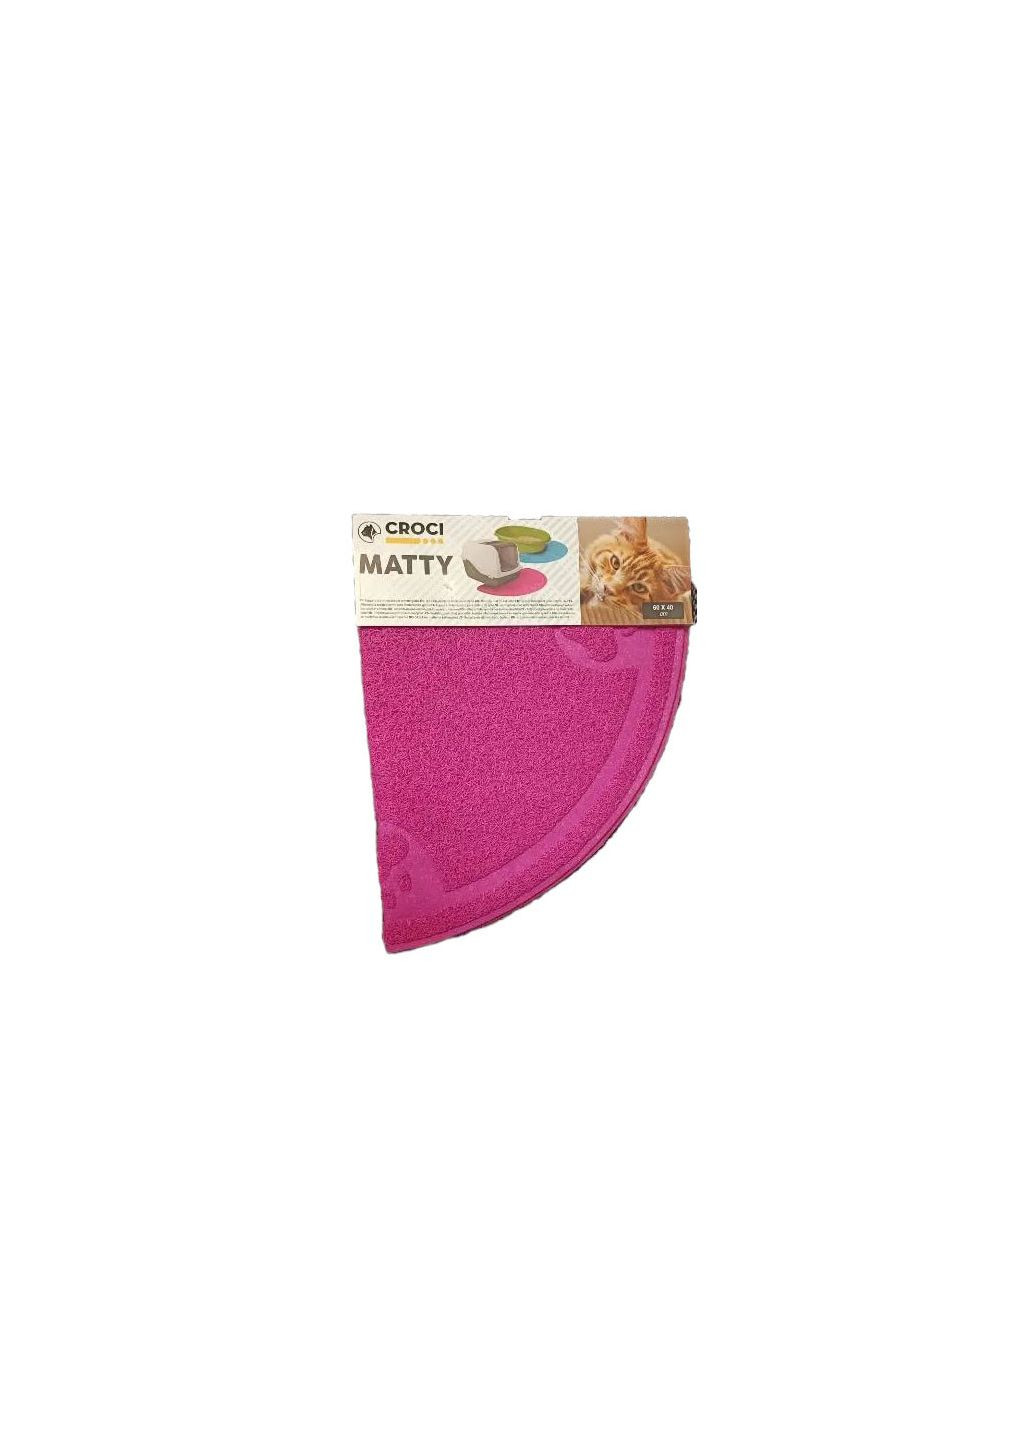 Коврик под туалет для котов Matty 60х40, розовый полукруг 169395 Croci (278308134)